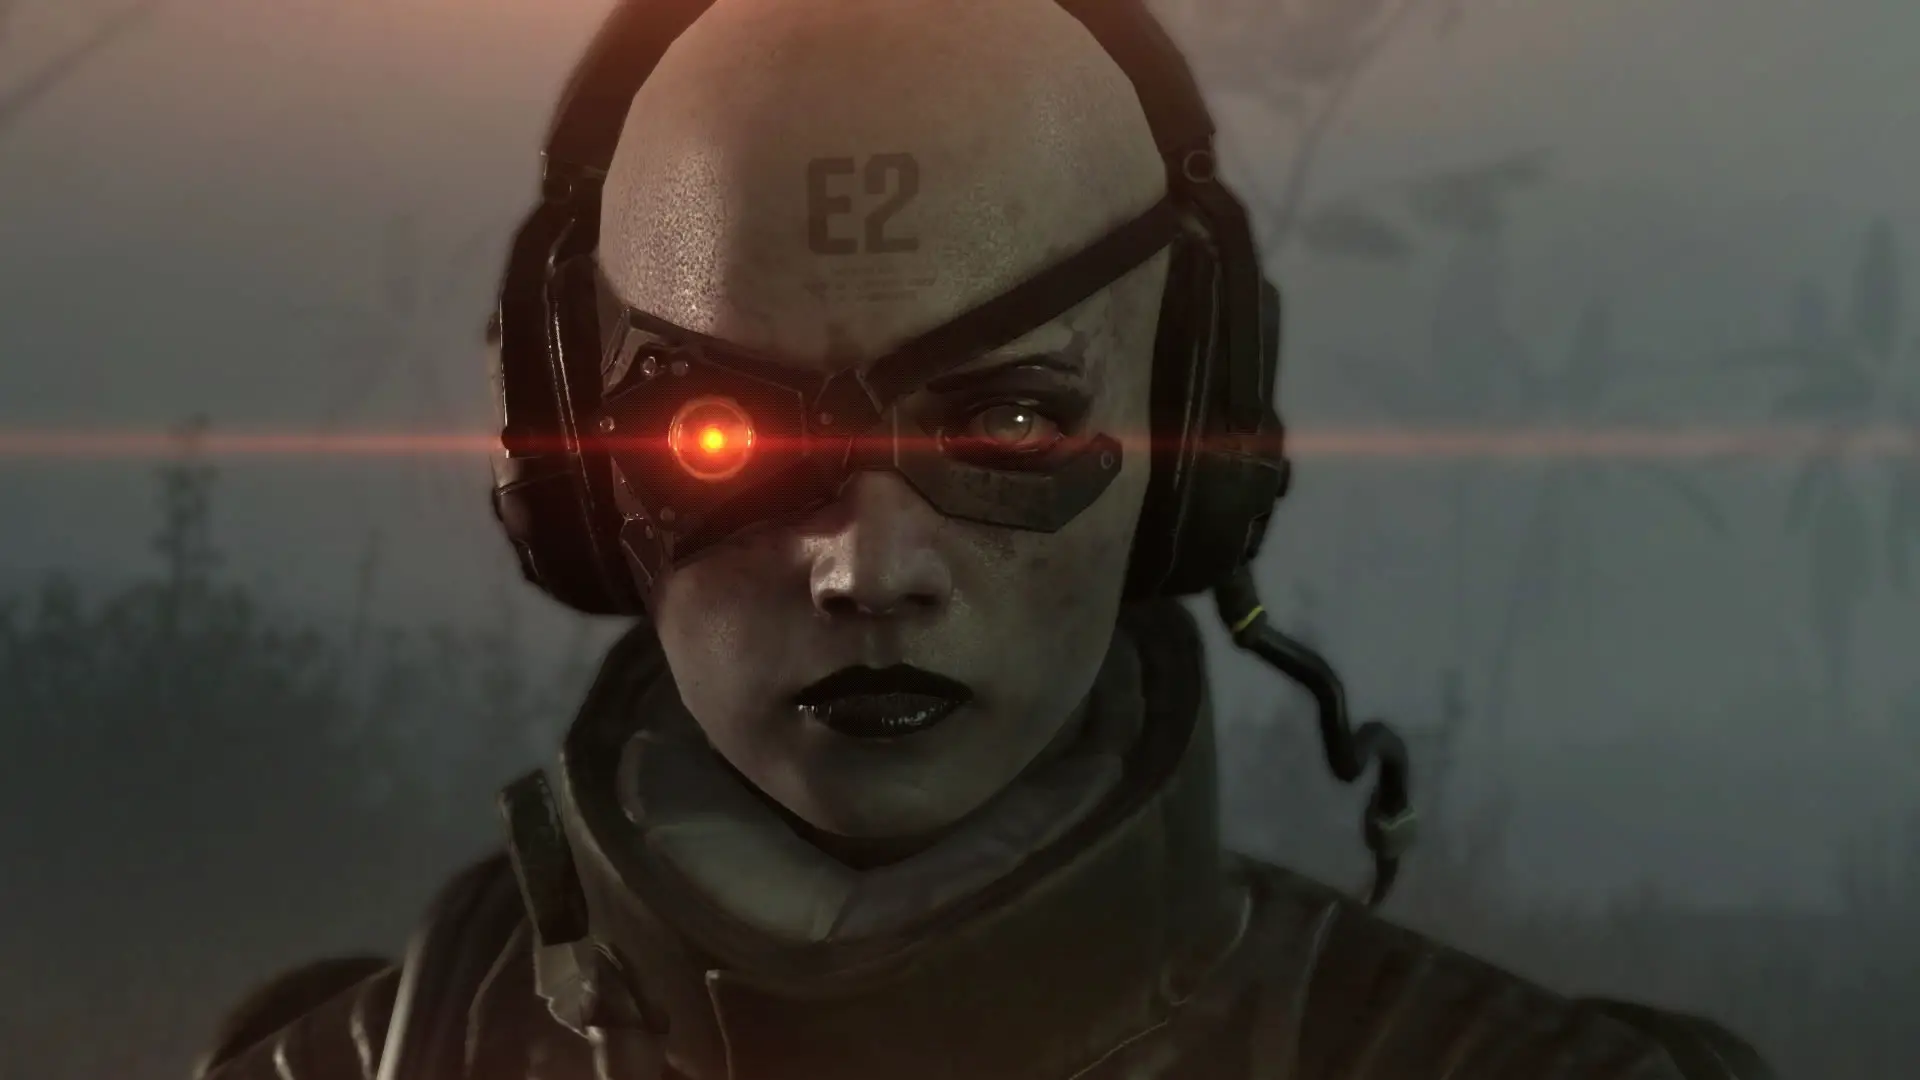 Metal-Gear-Solid-V-The-Phantom-Pain-E3-2015-Screen-E2